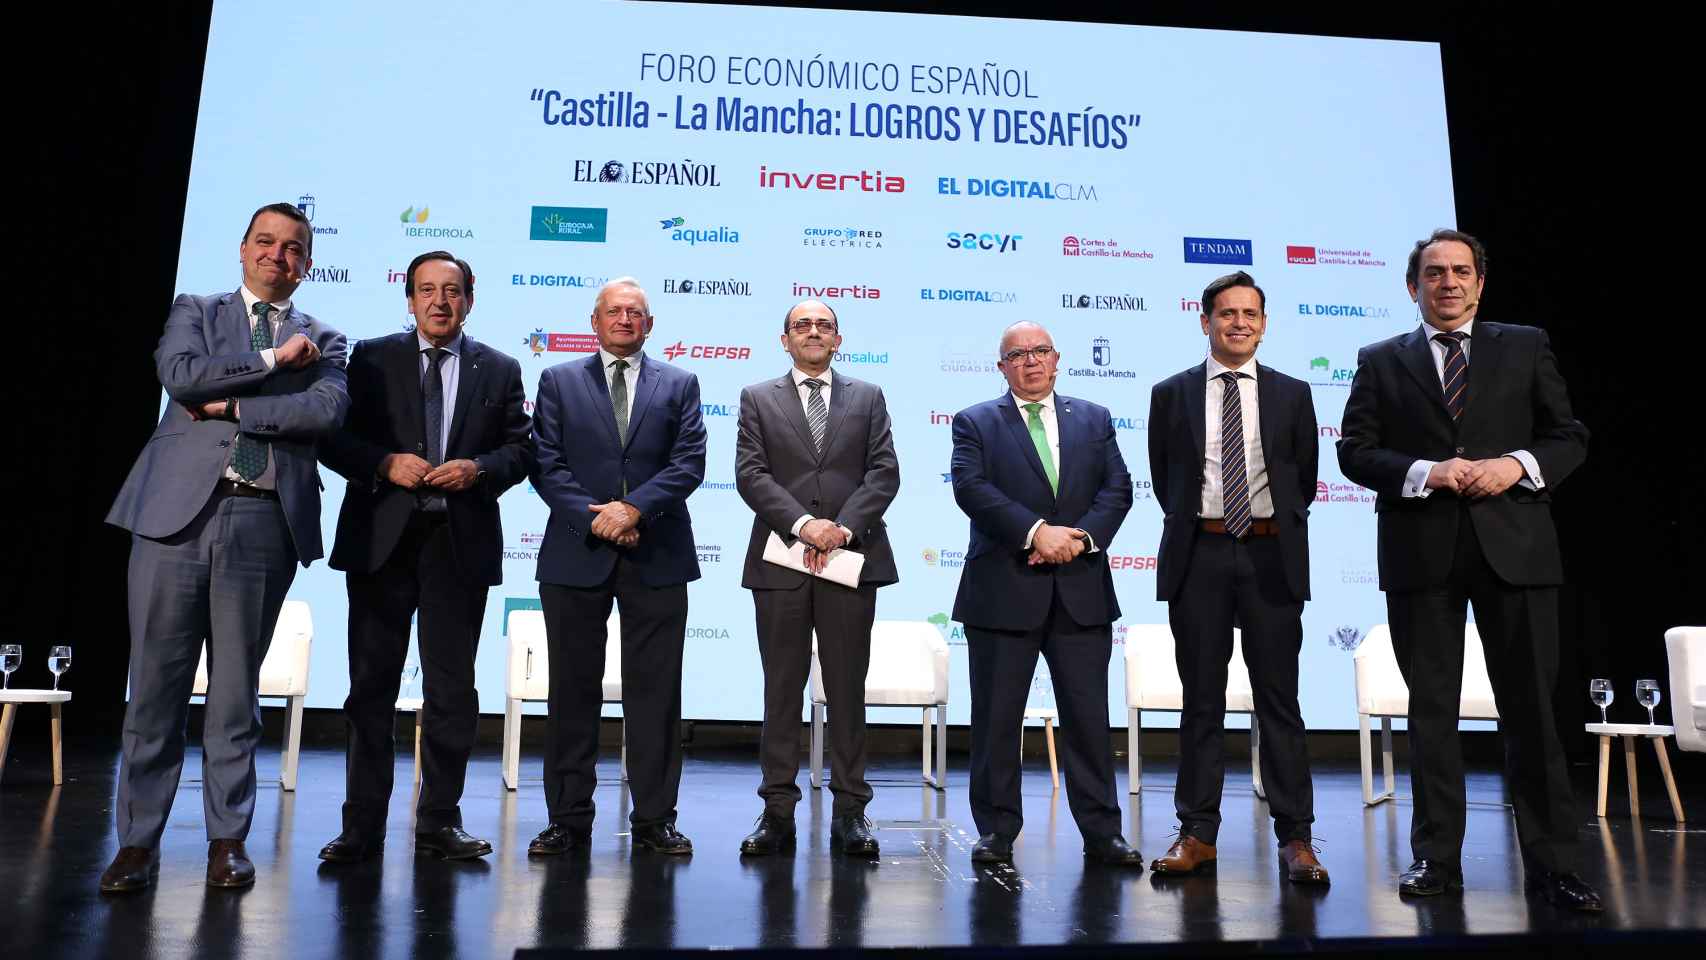 Francisco Martínez Arroyo, Pedro Barato, Ángel Villafranca, Eusebio Cedena, Gregorio Gómez, José María Manzanilla y Víctor Yuste, de izquierda a derecha.